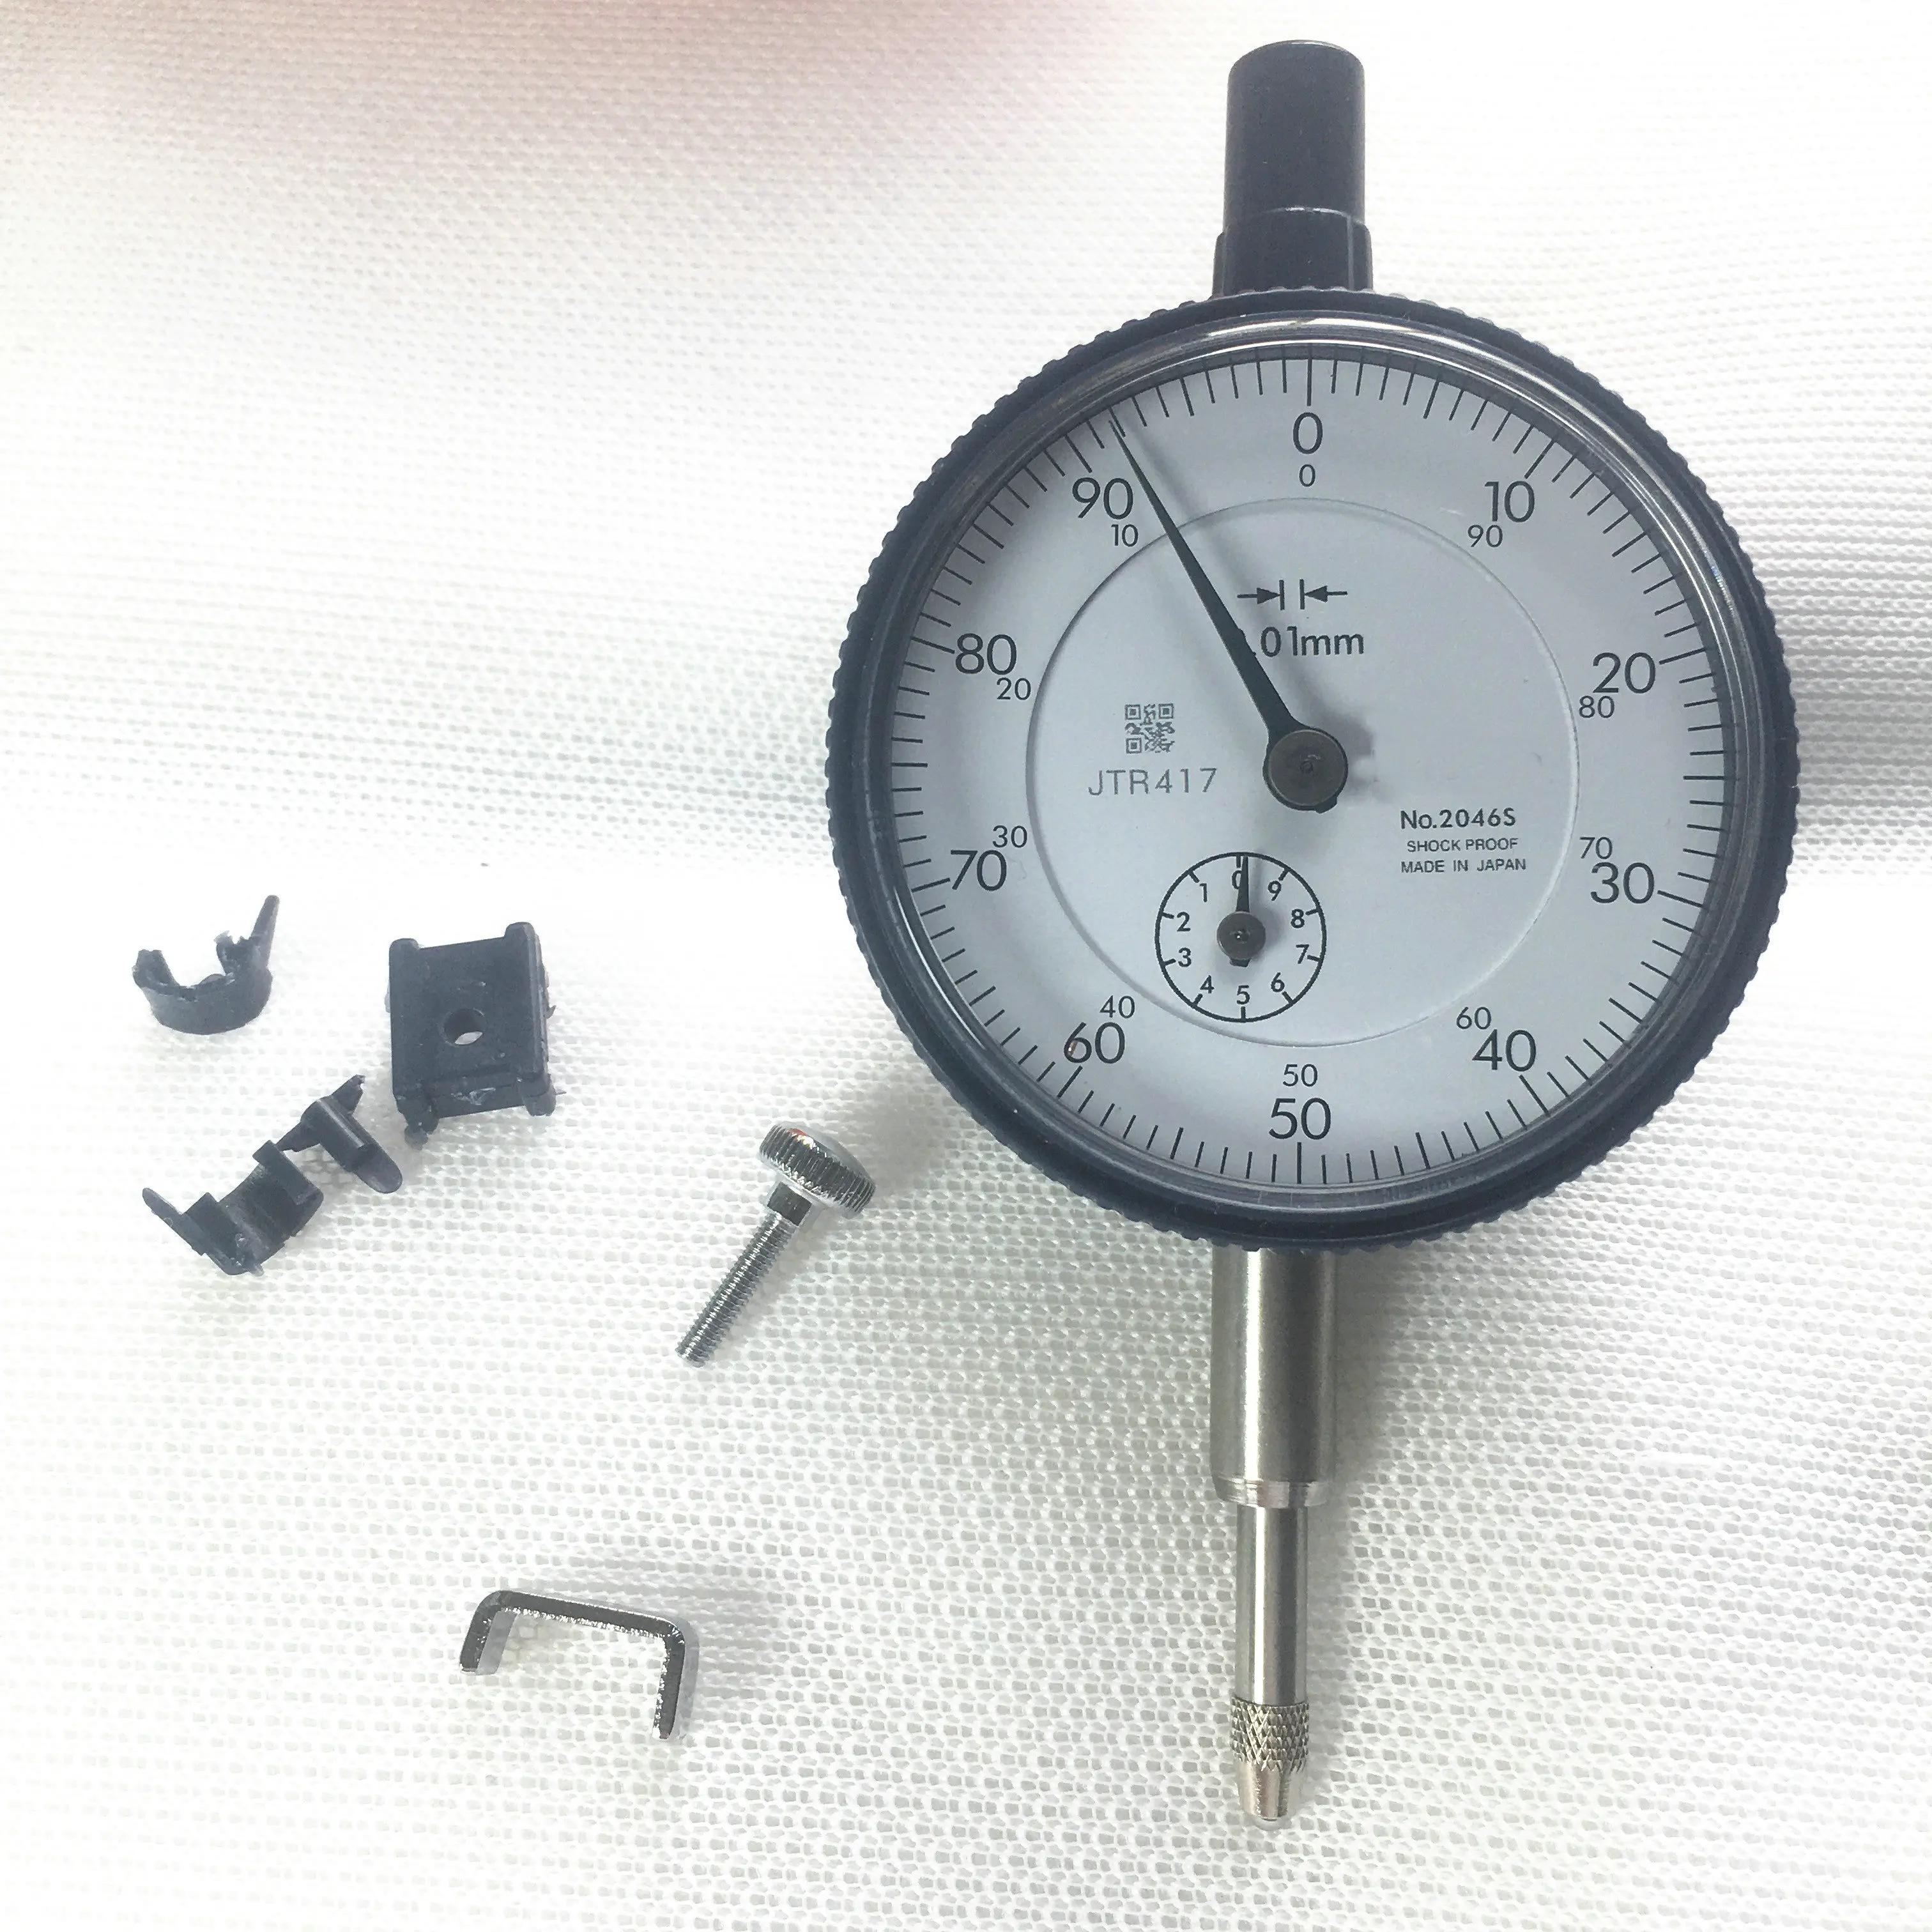 

Индикатор циферблата Mitutoyo inmm № 2046S 0-10 мм, точный индикатор разрешения 0,01 мм, измерительные противоударные измерительные инструменты 23